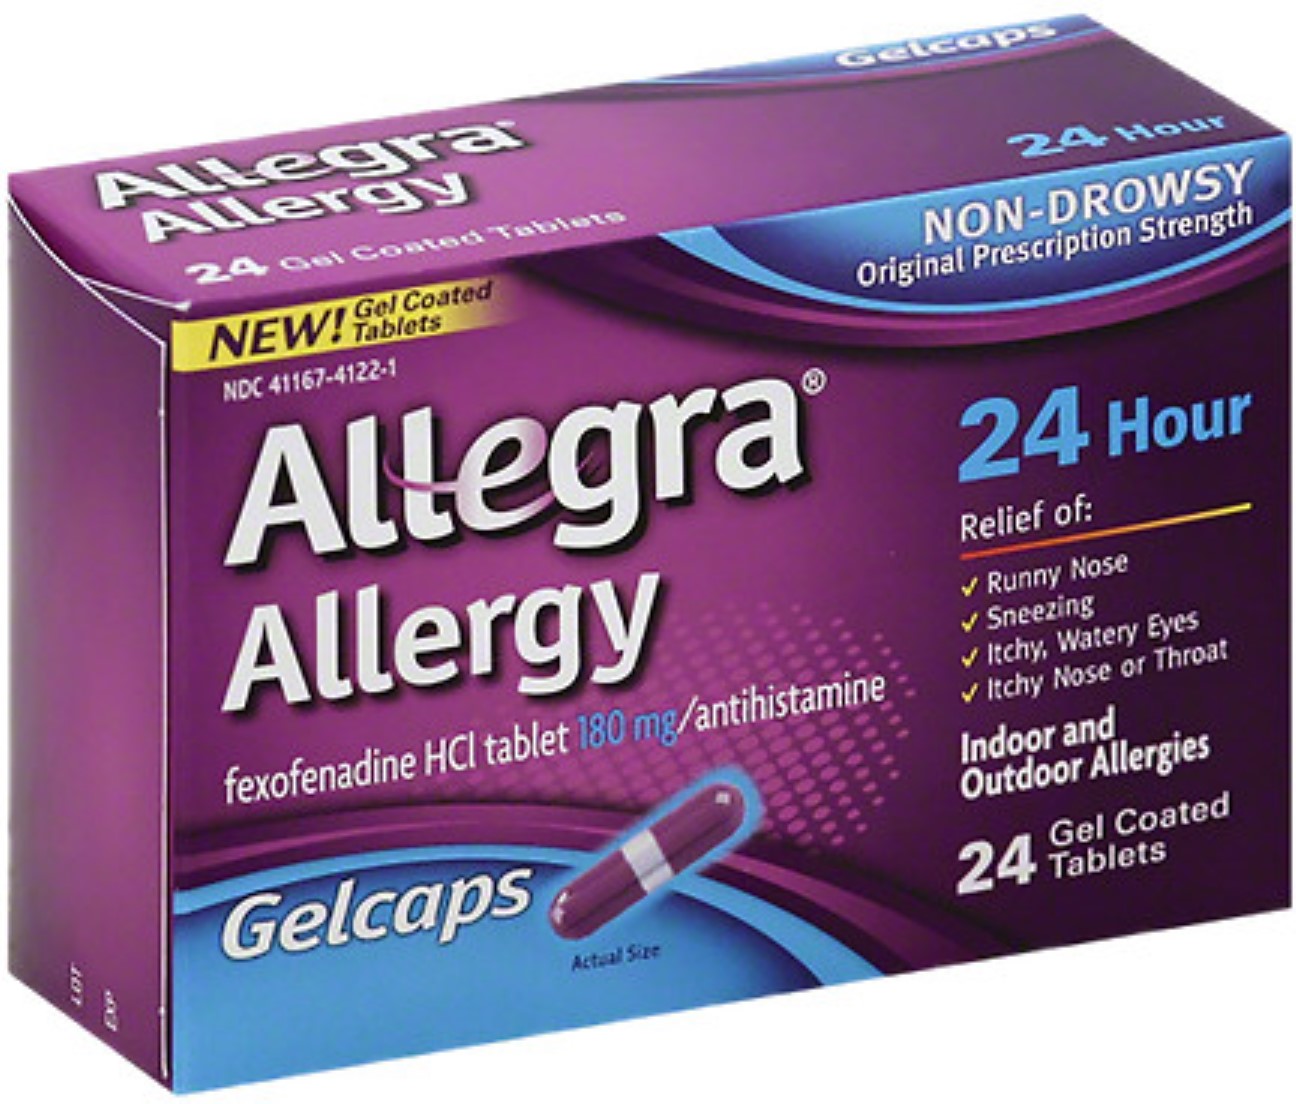 Allegra 24 Hour Allergy, Gelcaps 24 ea - image 1 of 2